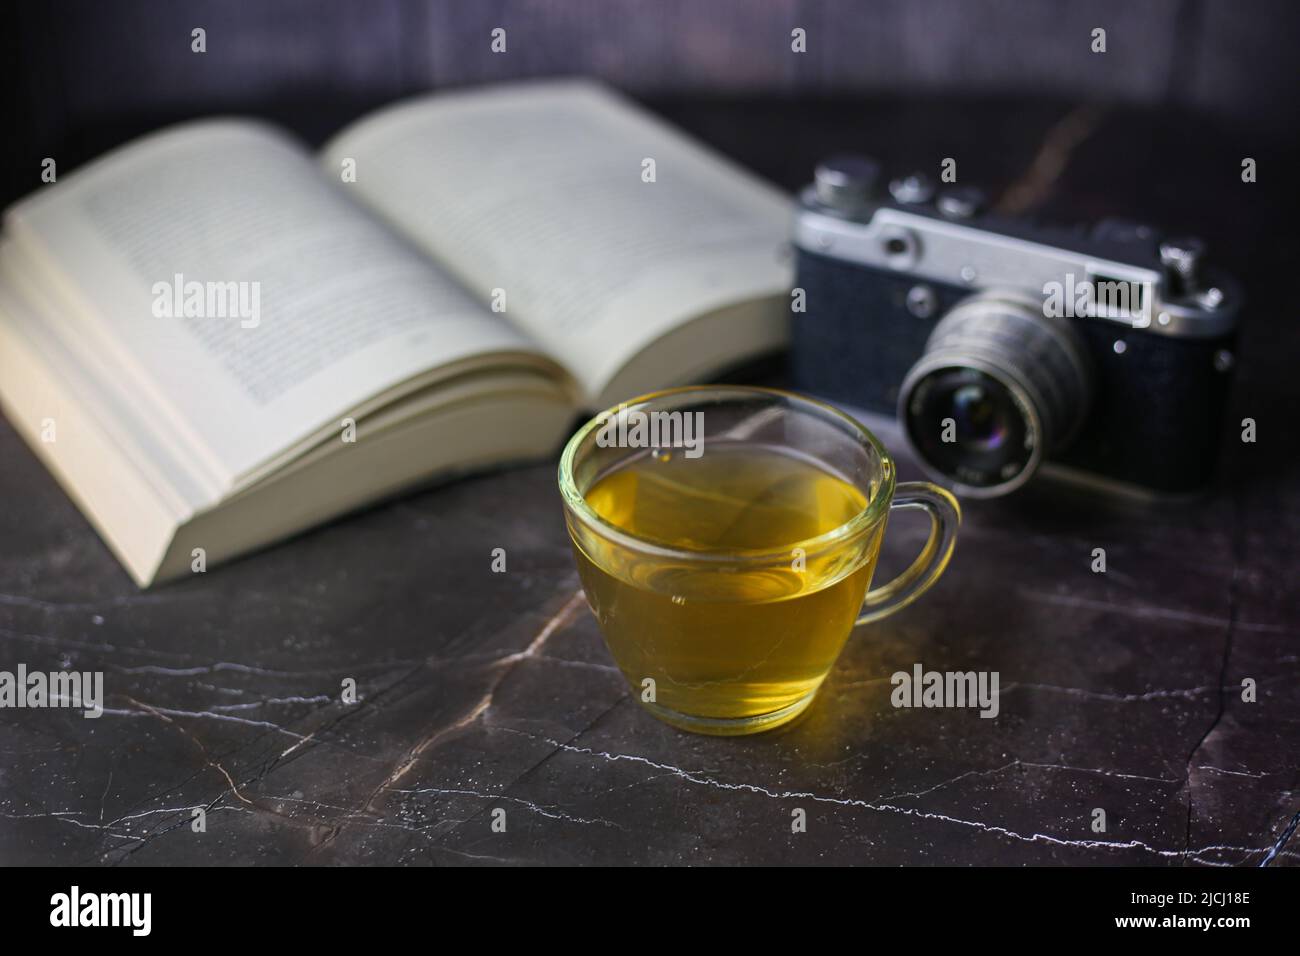 Thé vert infusé dans une tasse transparente près d'un livre ouvert et d'un appareil photo vintage sur fond sombre Banque D'Images